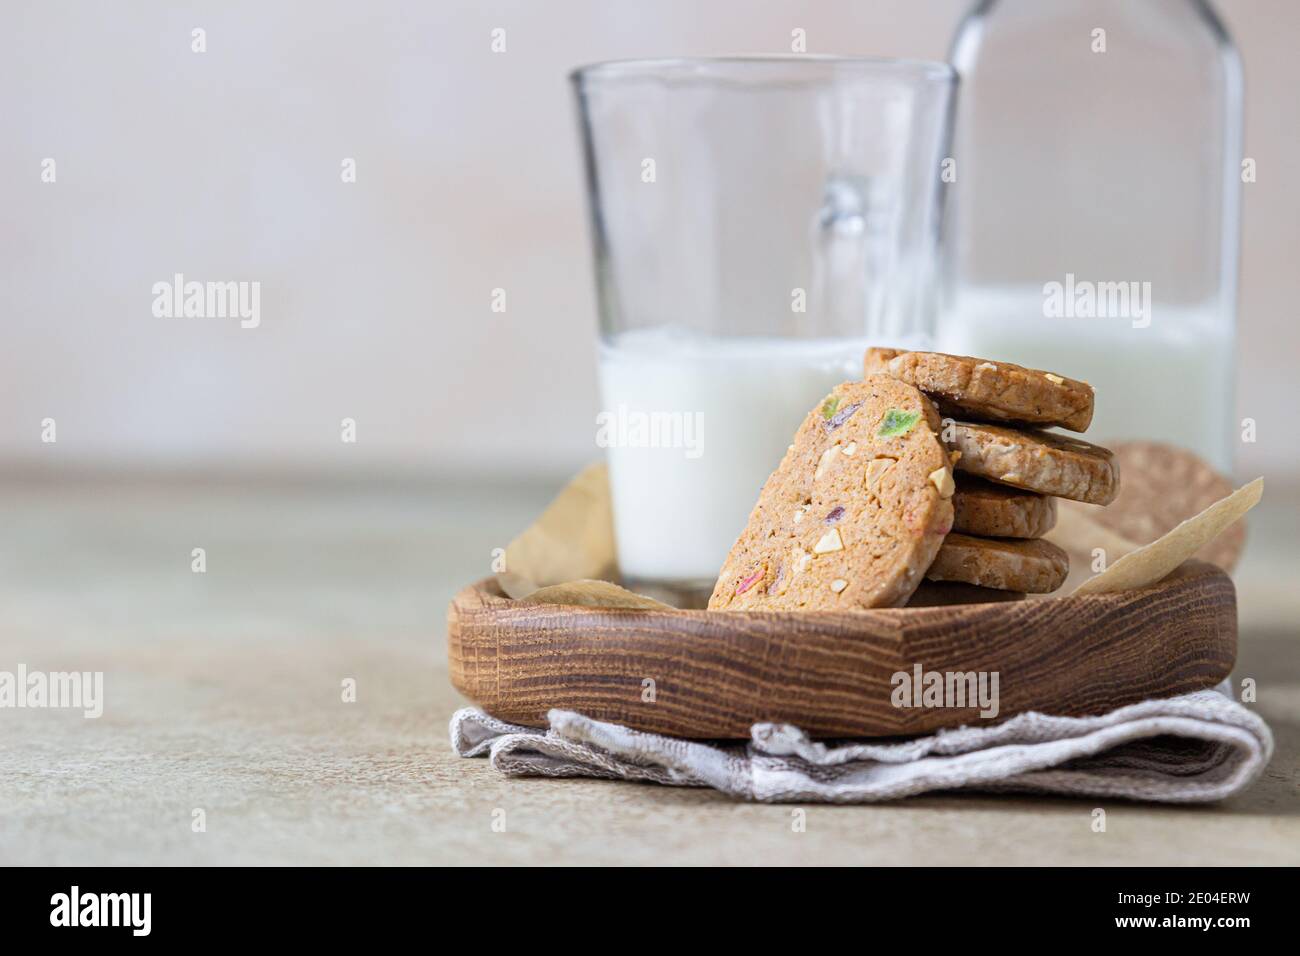 Biscuits au beurre danois épicés avec fruits confits, bâtonnets de cannelle et anis et verre de lait, fond en béton léger. Mise au point sélective. Banque D'Images